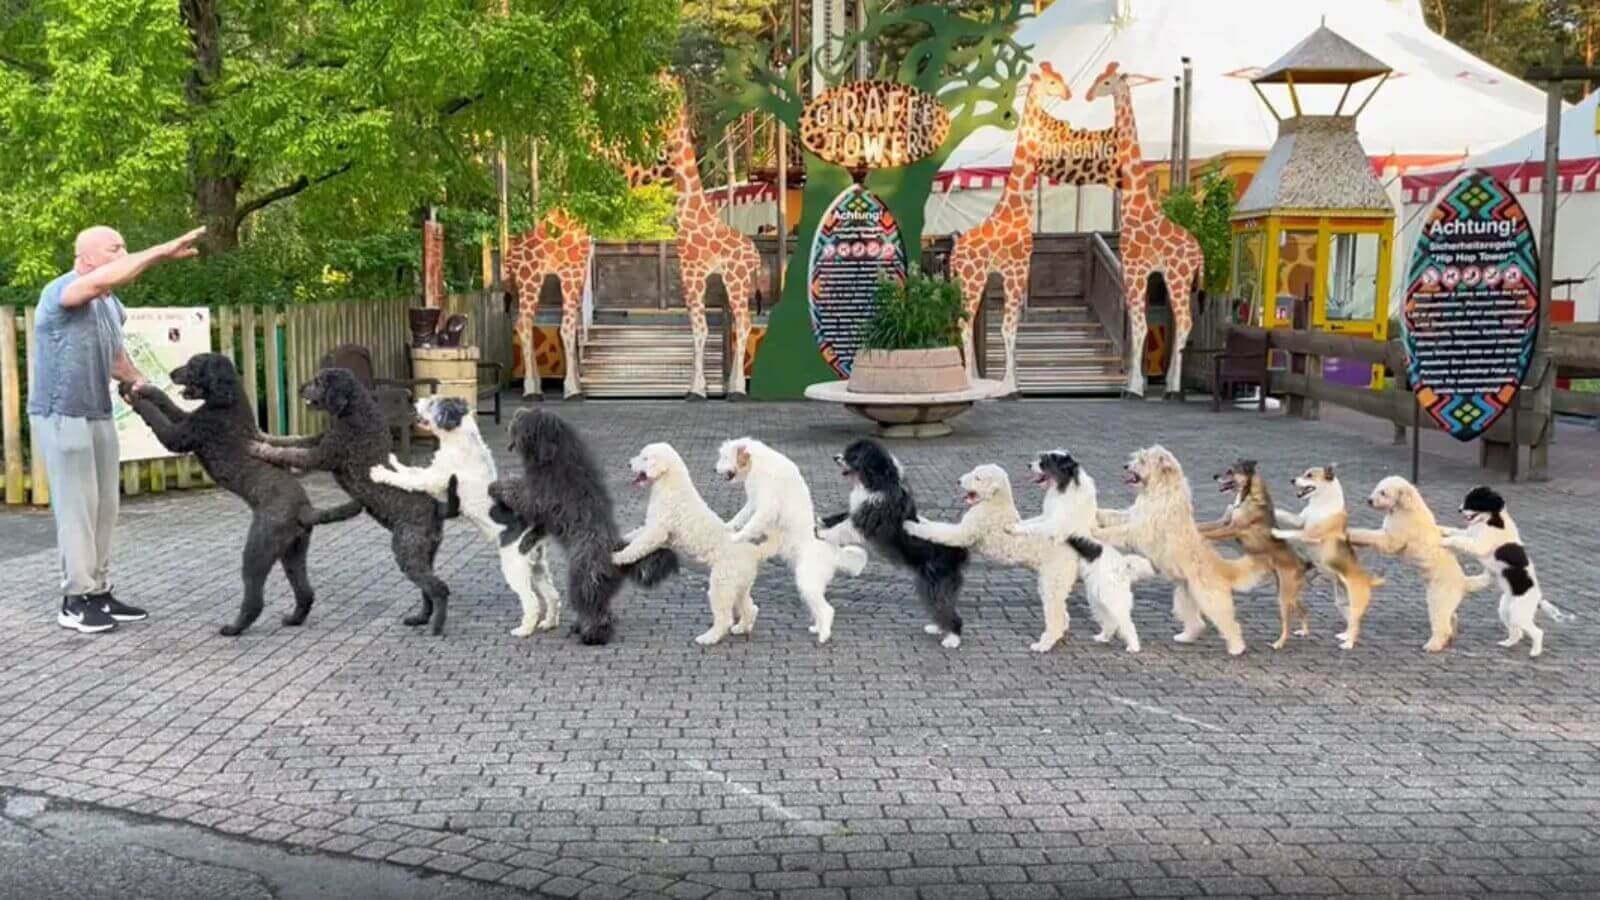 14 cachorros dançando Conga